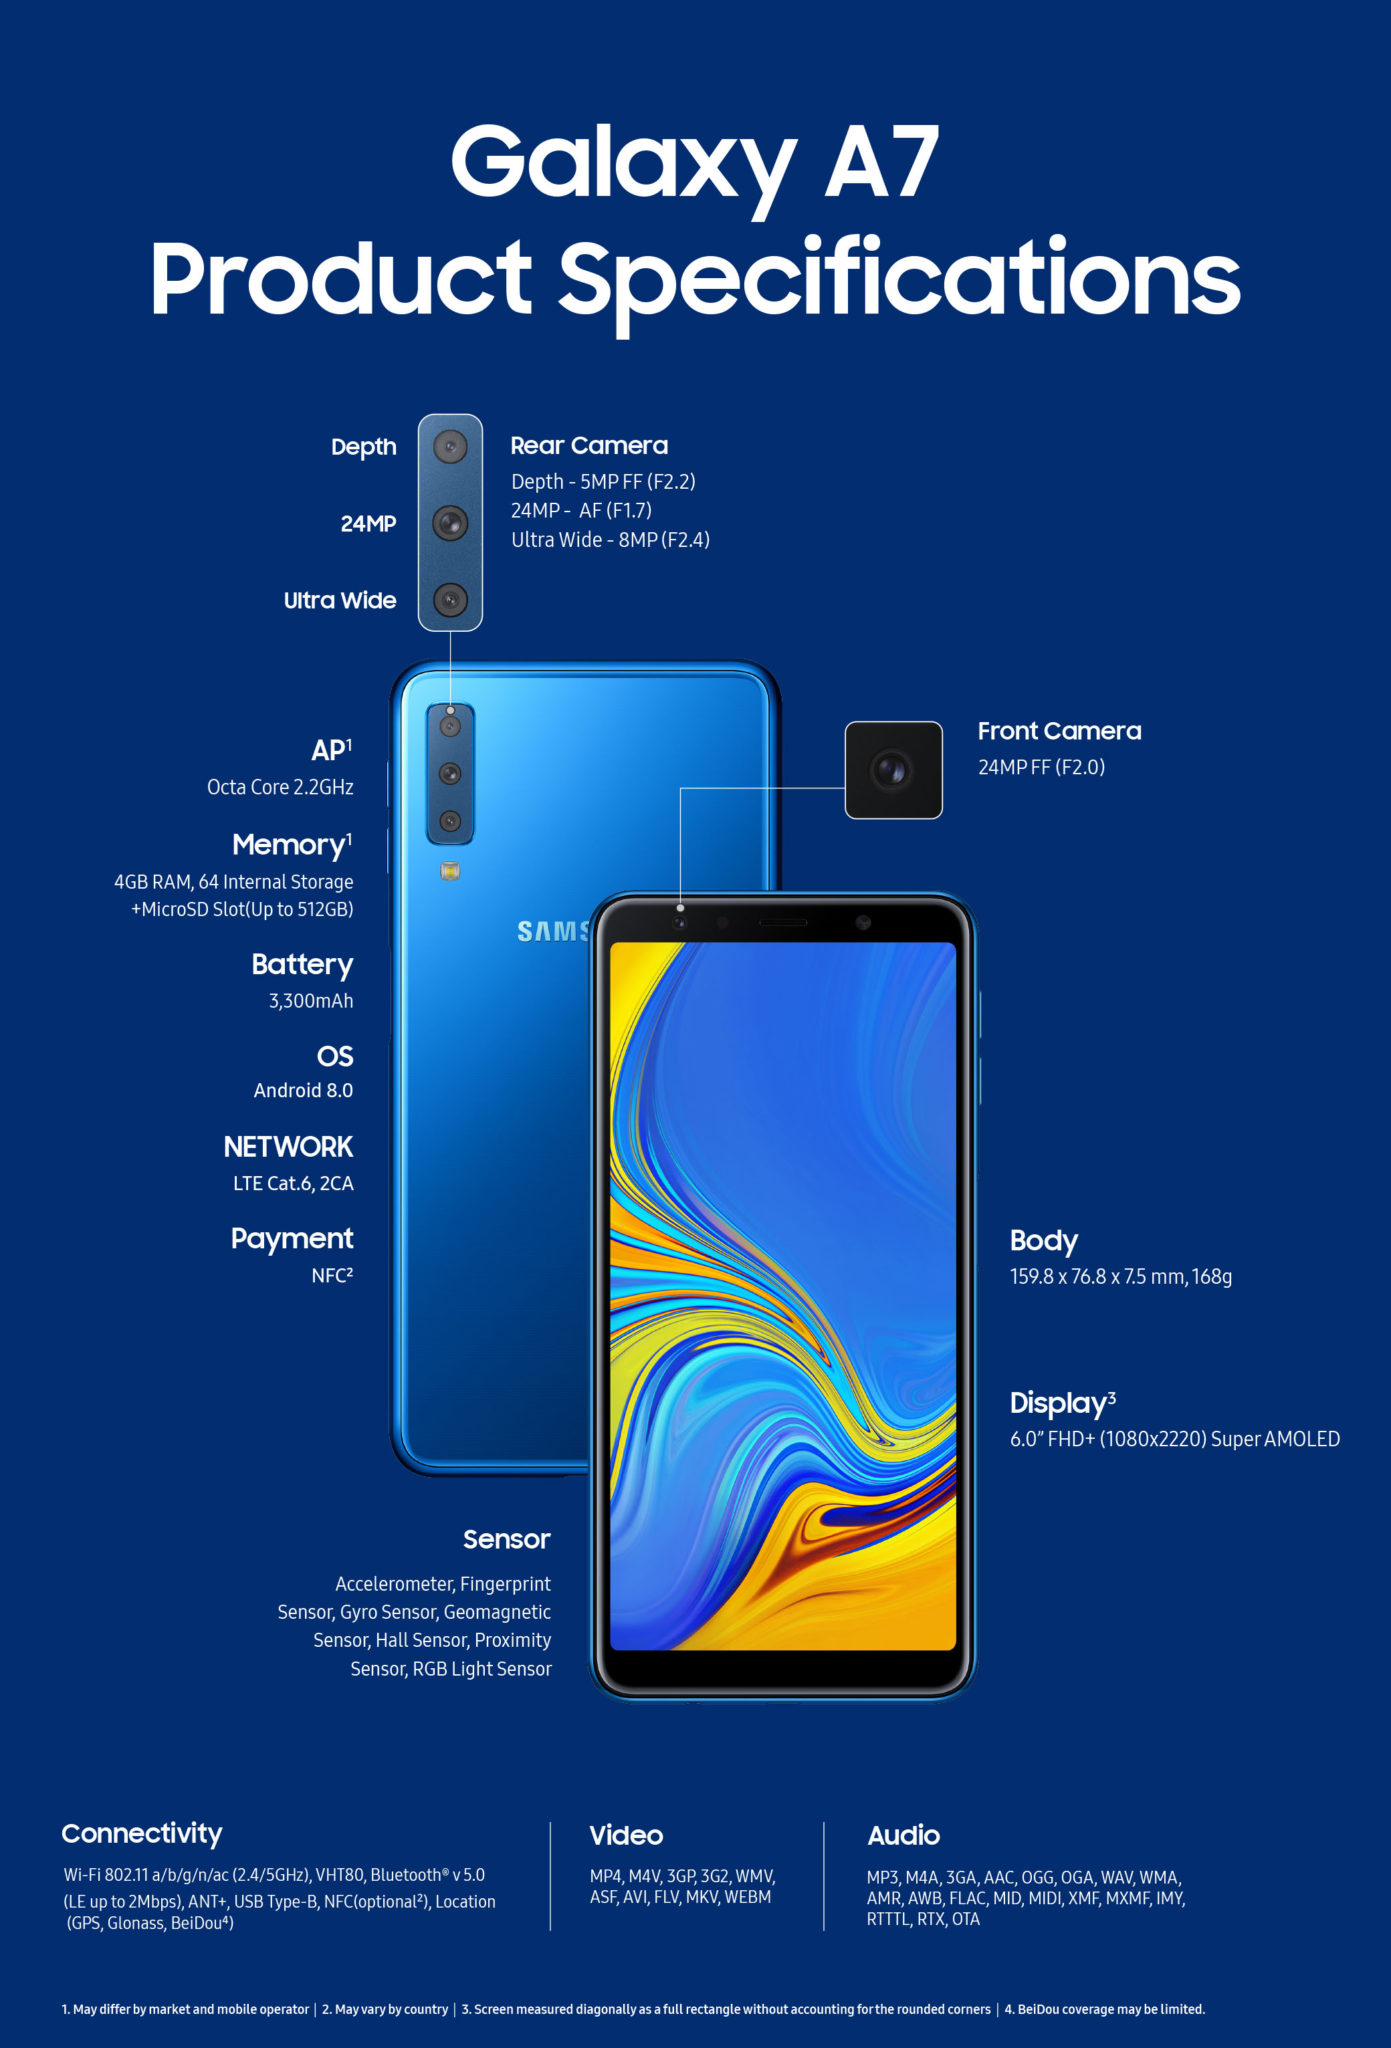 Anunciante Santuario seguridad Samsung presentó el Galaxy A7 (2018) con mejoras mínimas - Laik Informática